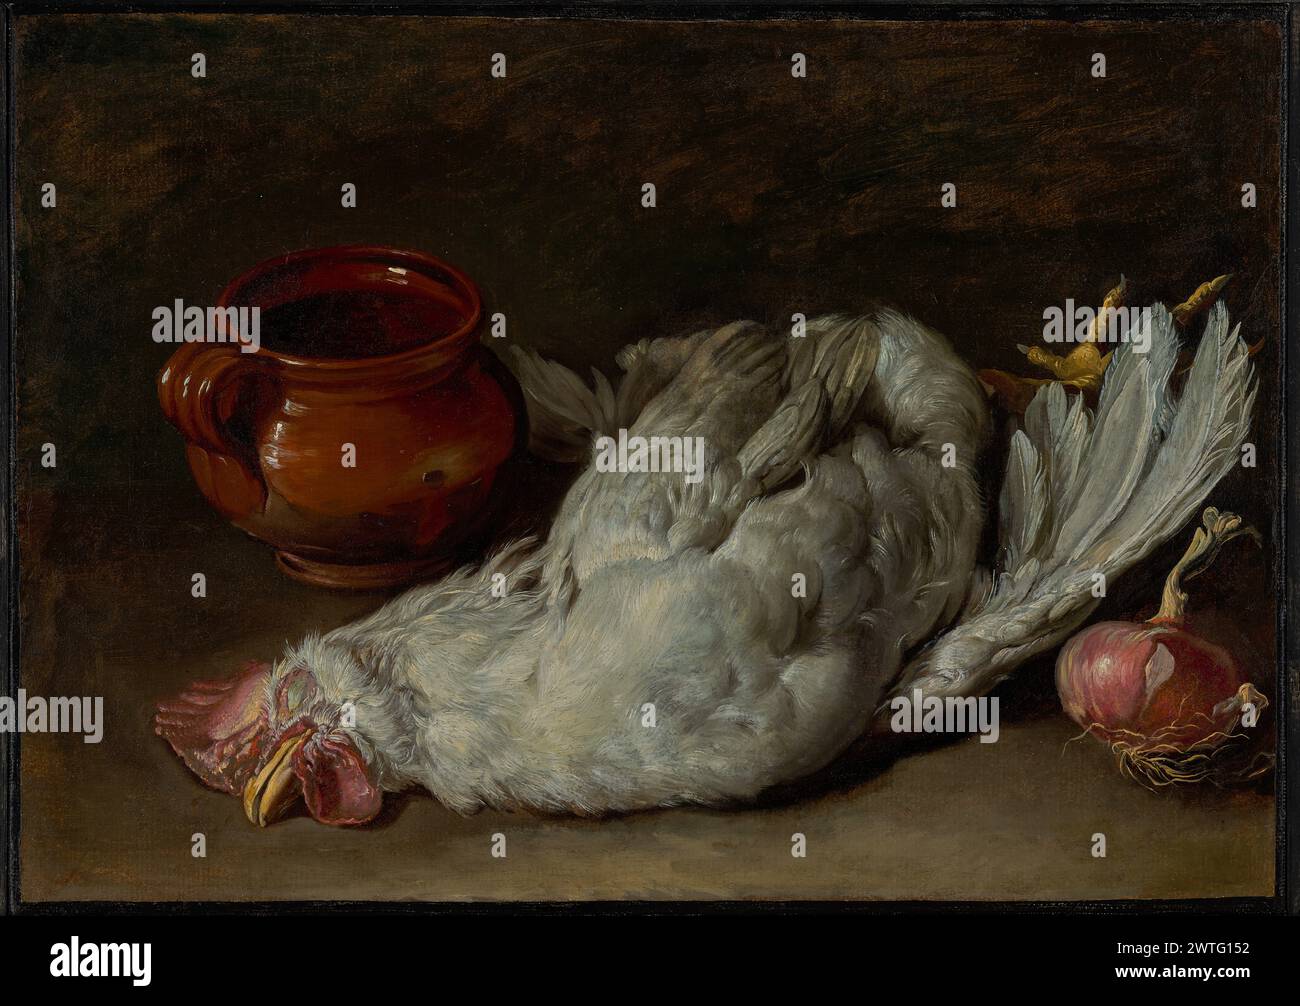 Nature morte avec Hen et Onion. Giacomo Ceruti (italien, 1698 - 1767) vers 1750–1760 Ceruti représente quelques aliments d'un garde-manger : un oignon rouge, une carafe en terre cuite et une poule morte. Une lumière vive éclaire la surface des objets, qui émergent sur le fond sombre de la peinture. Banque D'Images